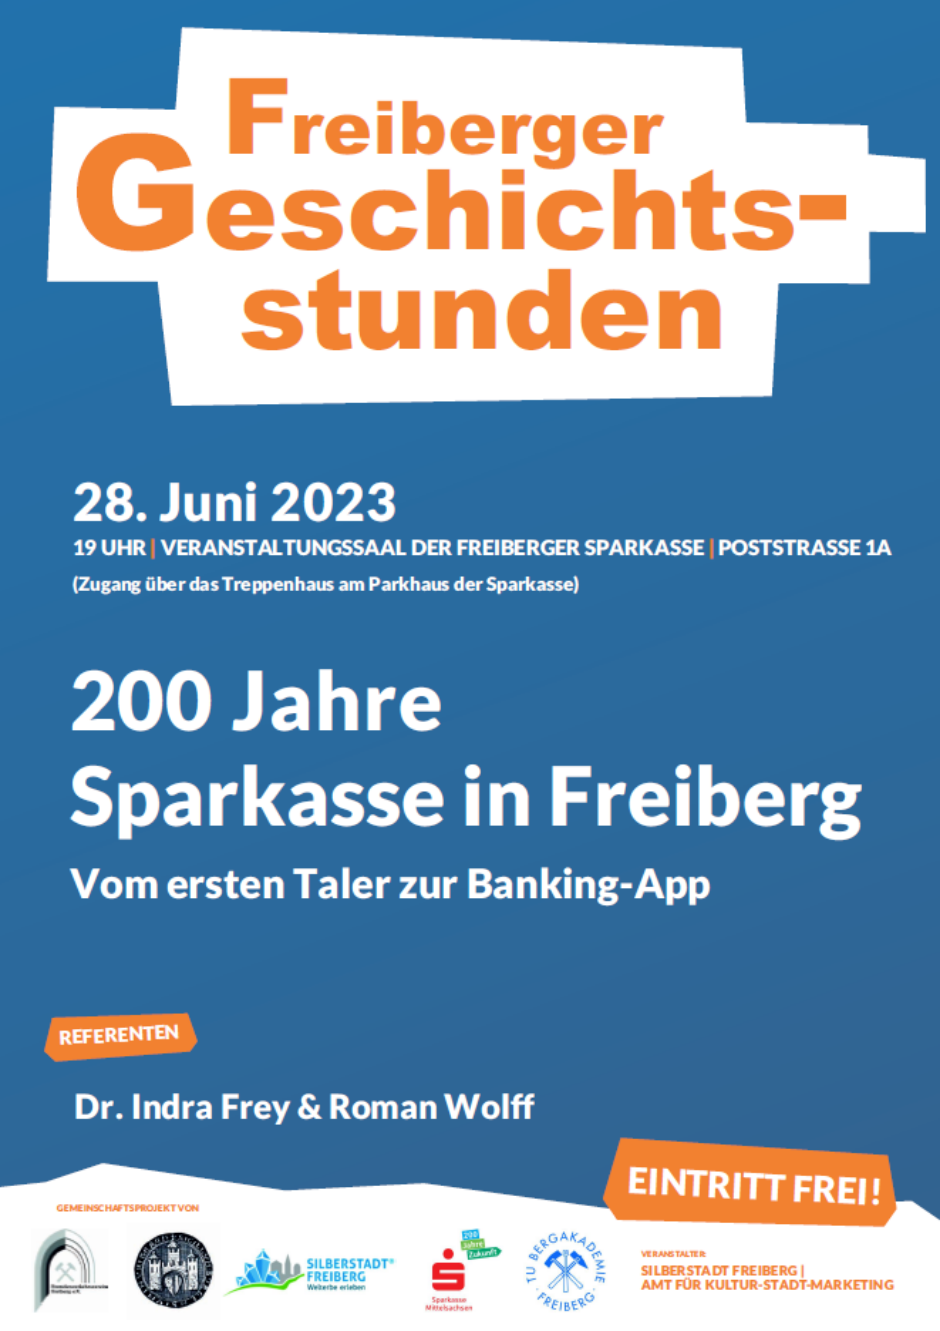 Freiberger Geschichtsstunde am 28.6.2023: „Vom ersten Taler zur Banking-App.“